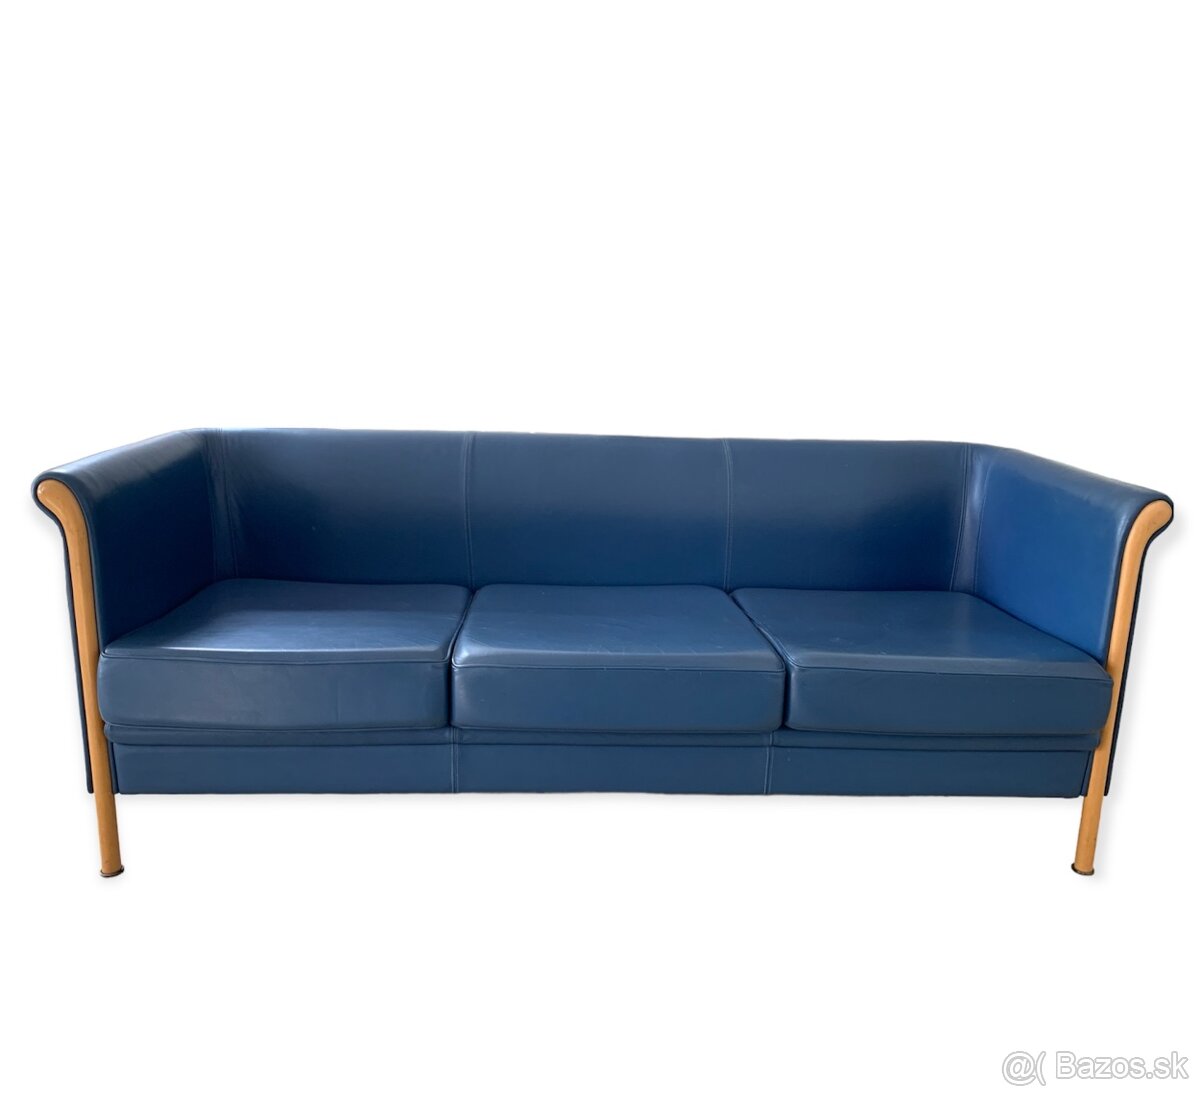 MOROSO luxusní italská kožená sofa, původní cena 180 tis. Kč